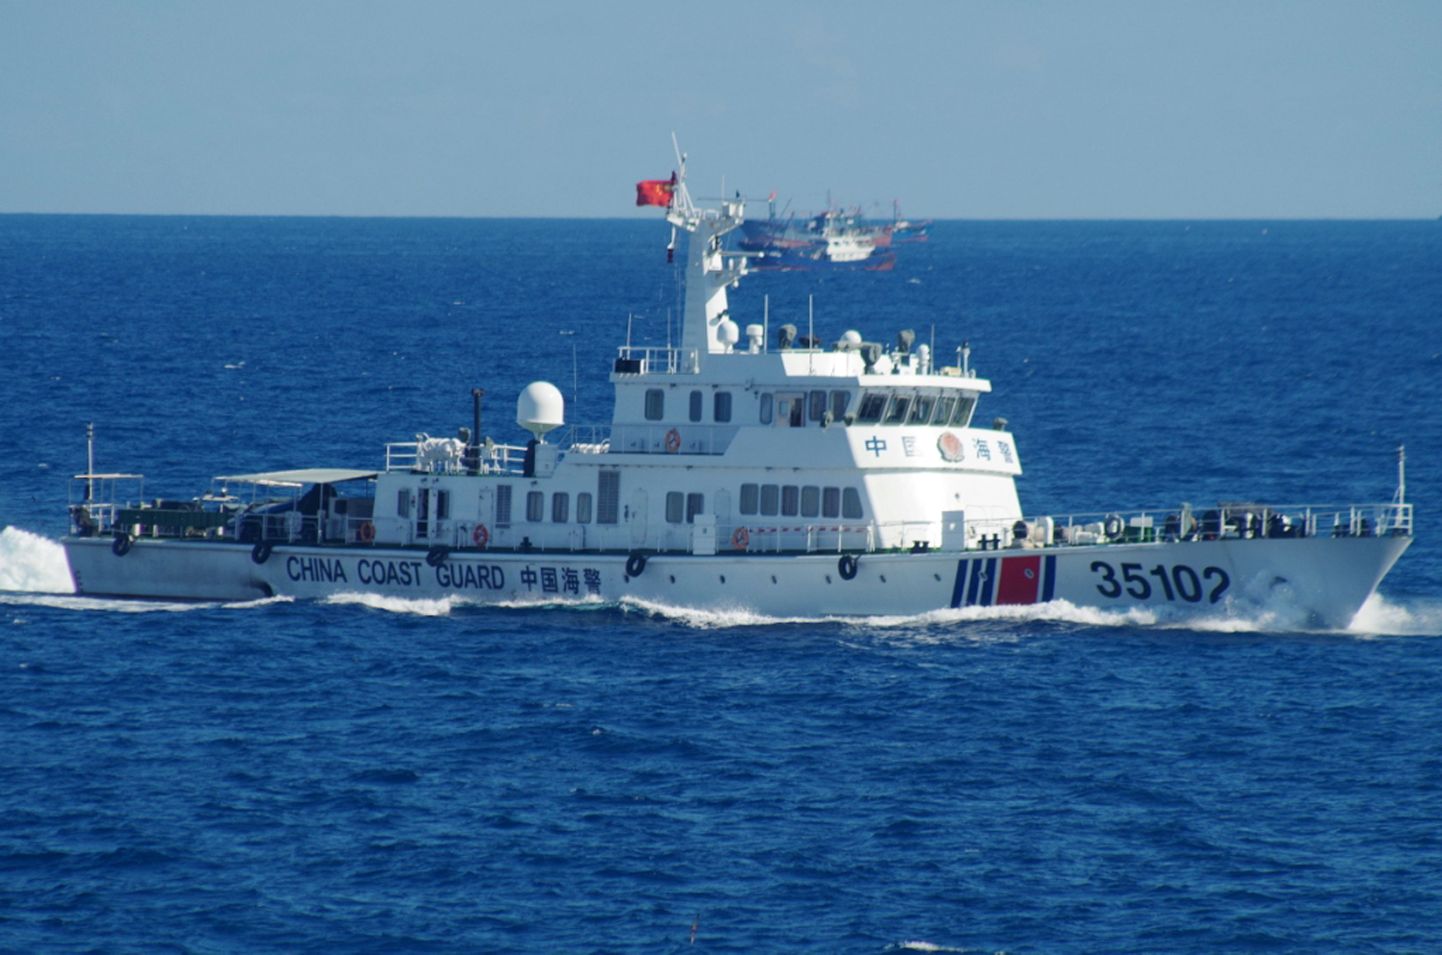 Hiina rannavalvealus vaidlusaluste saarte lähedal.